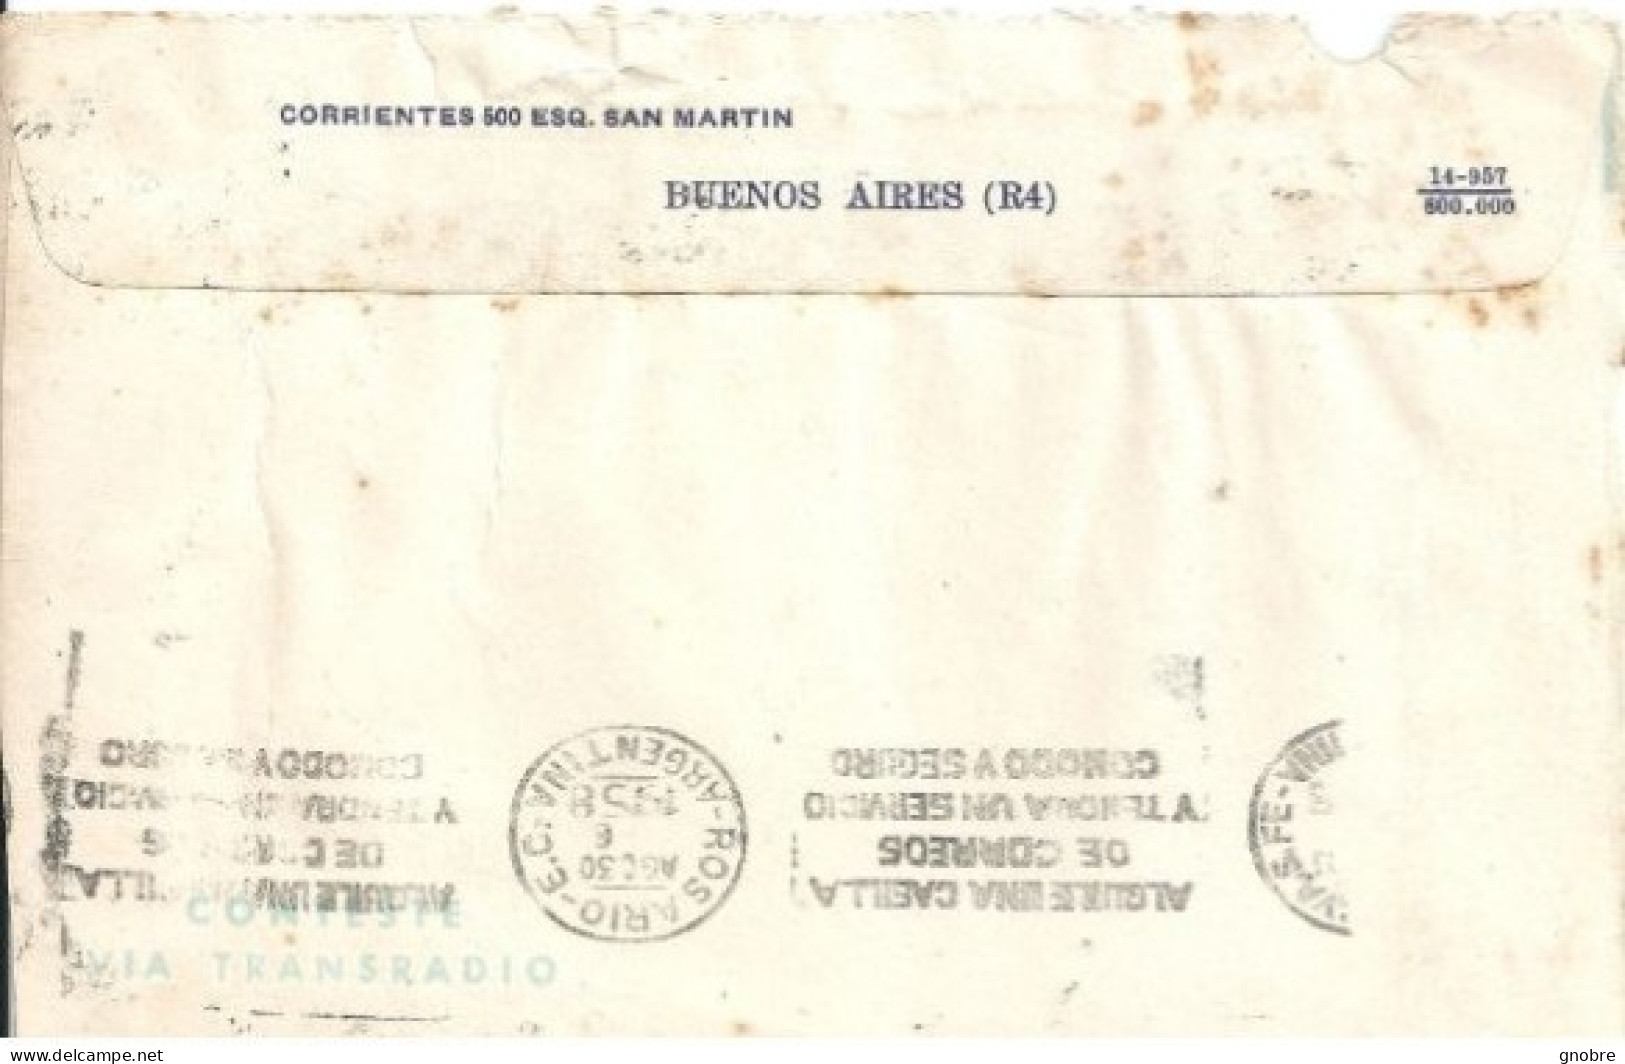 ARGENTINA COVER WIT TELEGRAM TRANSRADIO TELEGRAMA 1958 - Storia Postale